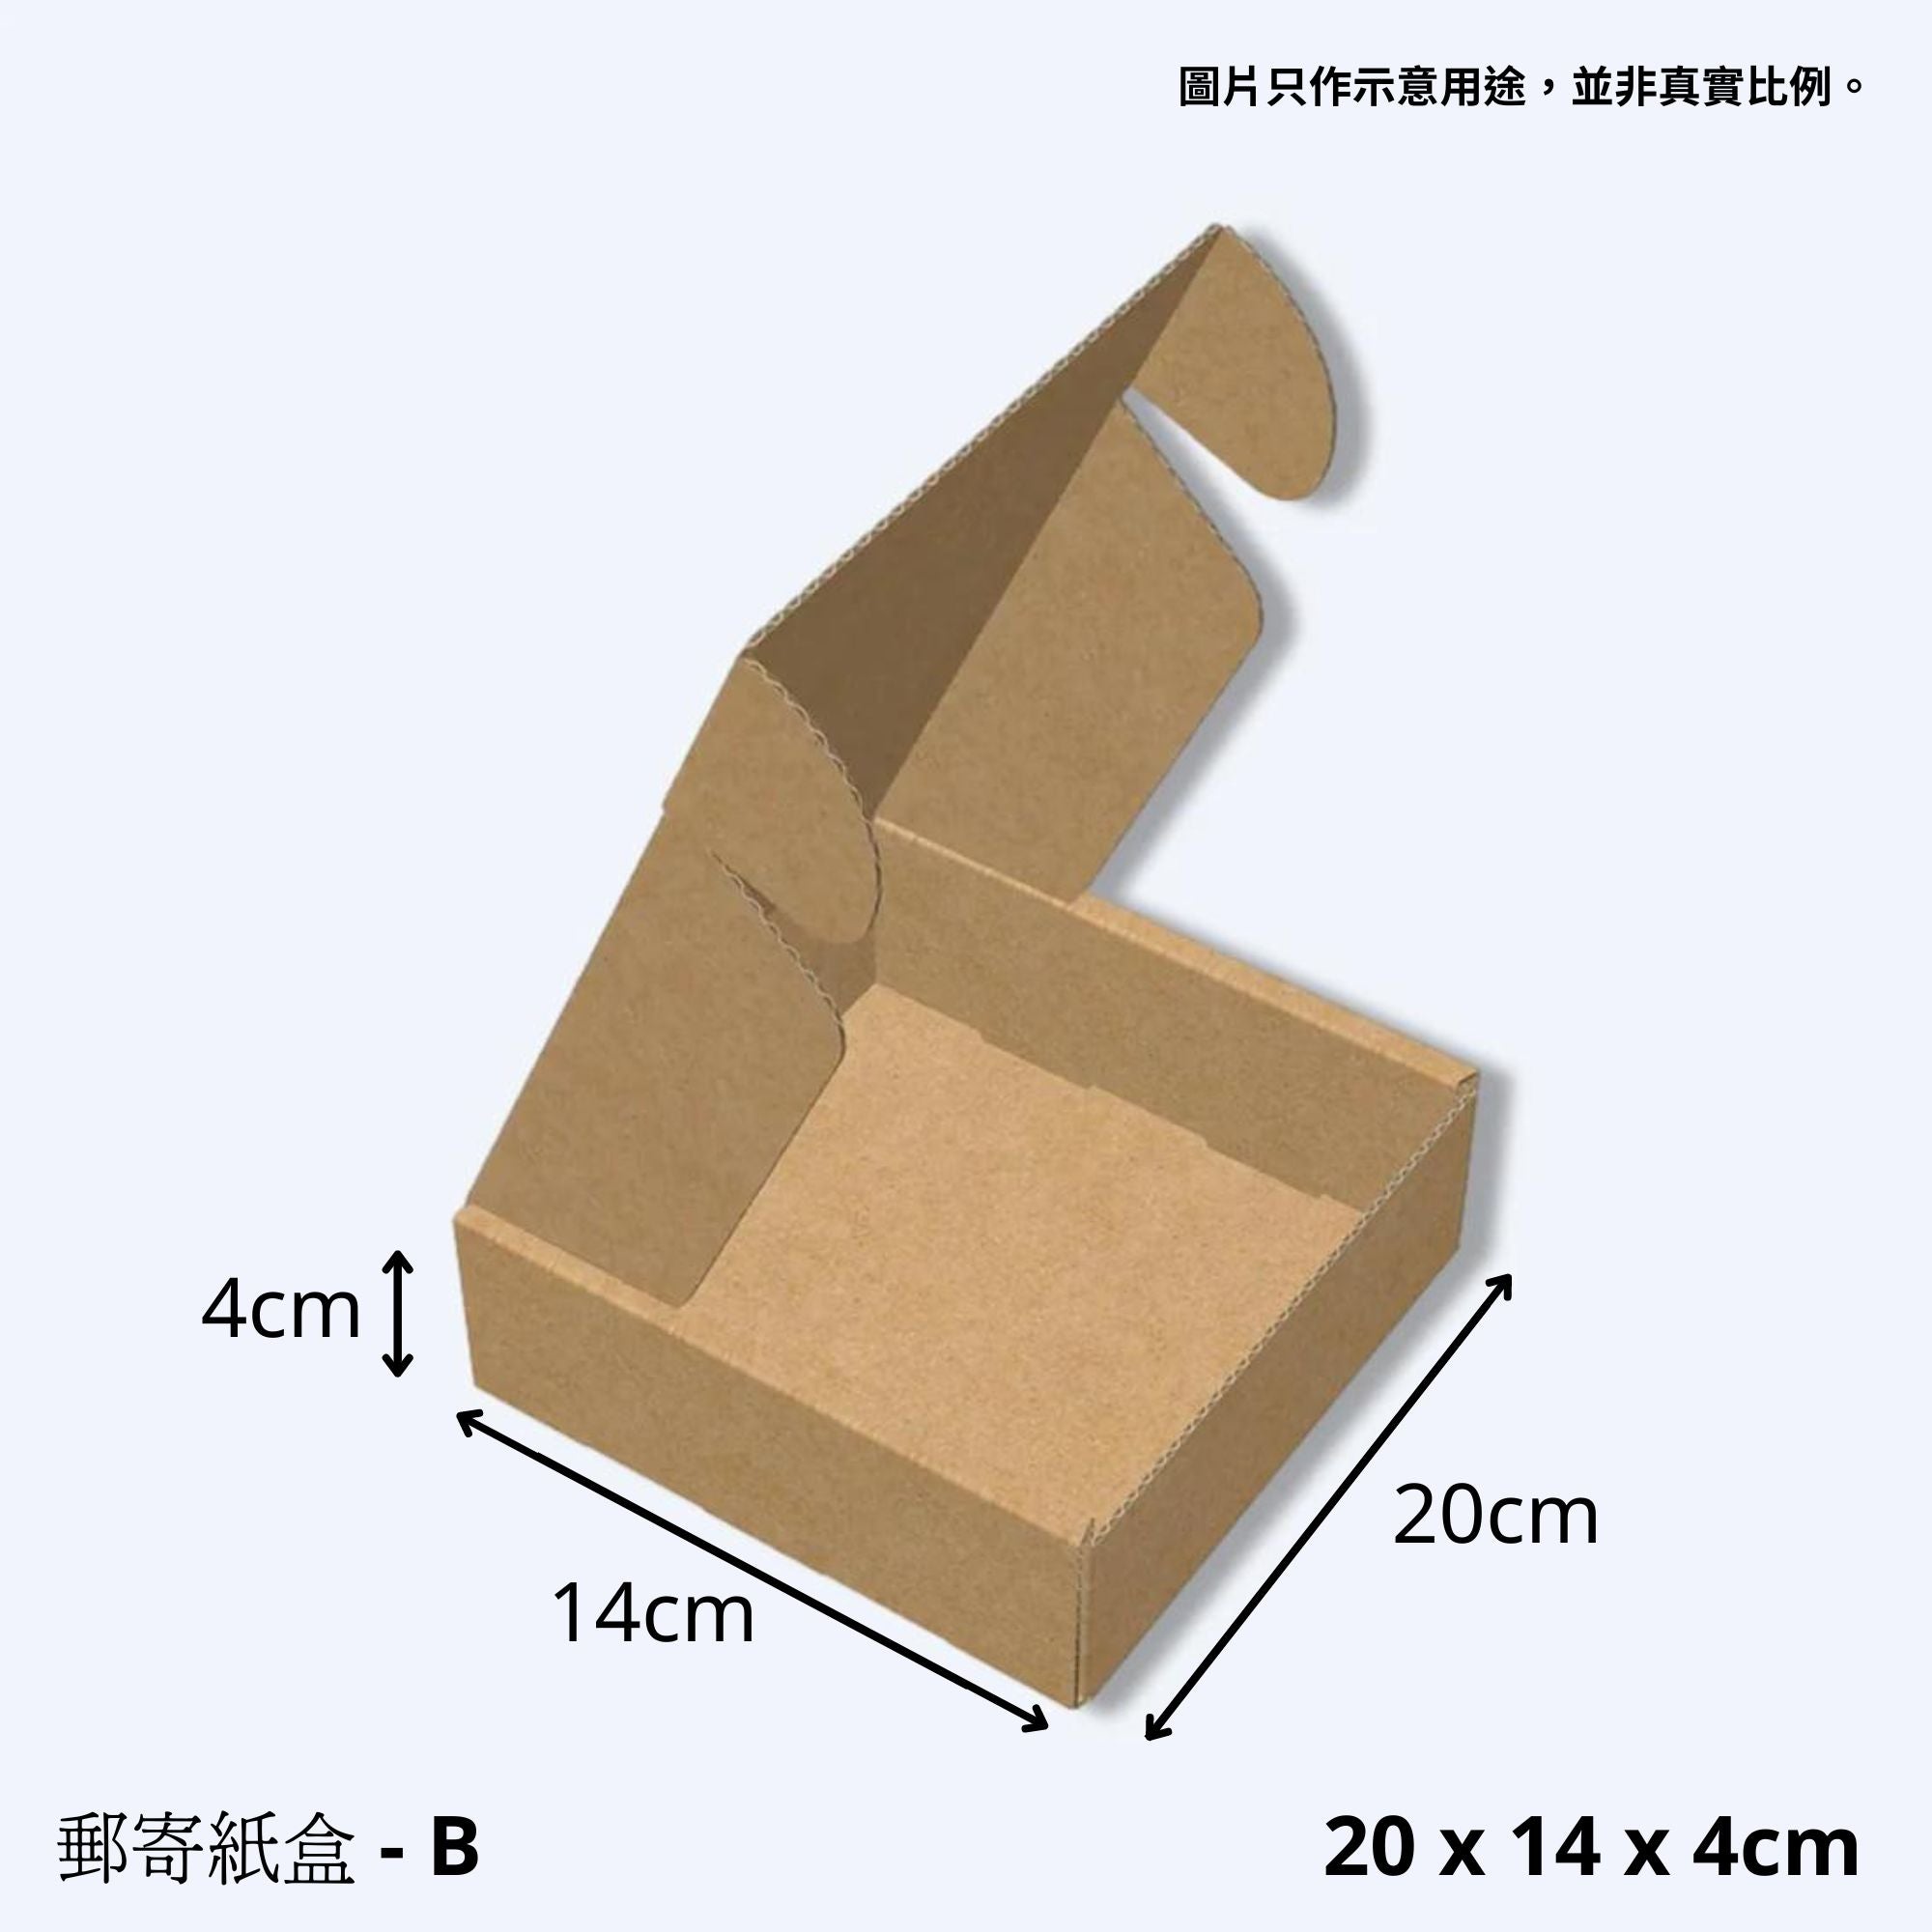 精緻的紙盒展開於淡灰色背景，尺寸標註為20 x 14 x 4公分，展示了紙盒的實用性與適中大小，適合作為輕便的飛機盒使用，同時兼顧環保與方便攜帶的特點。